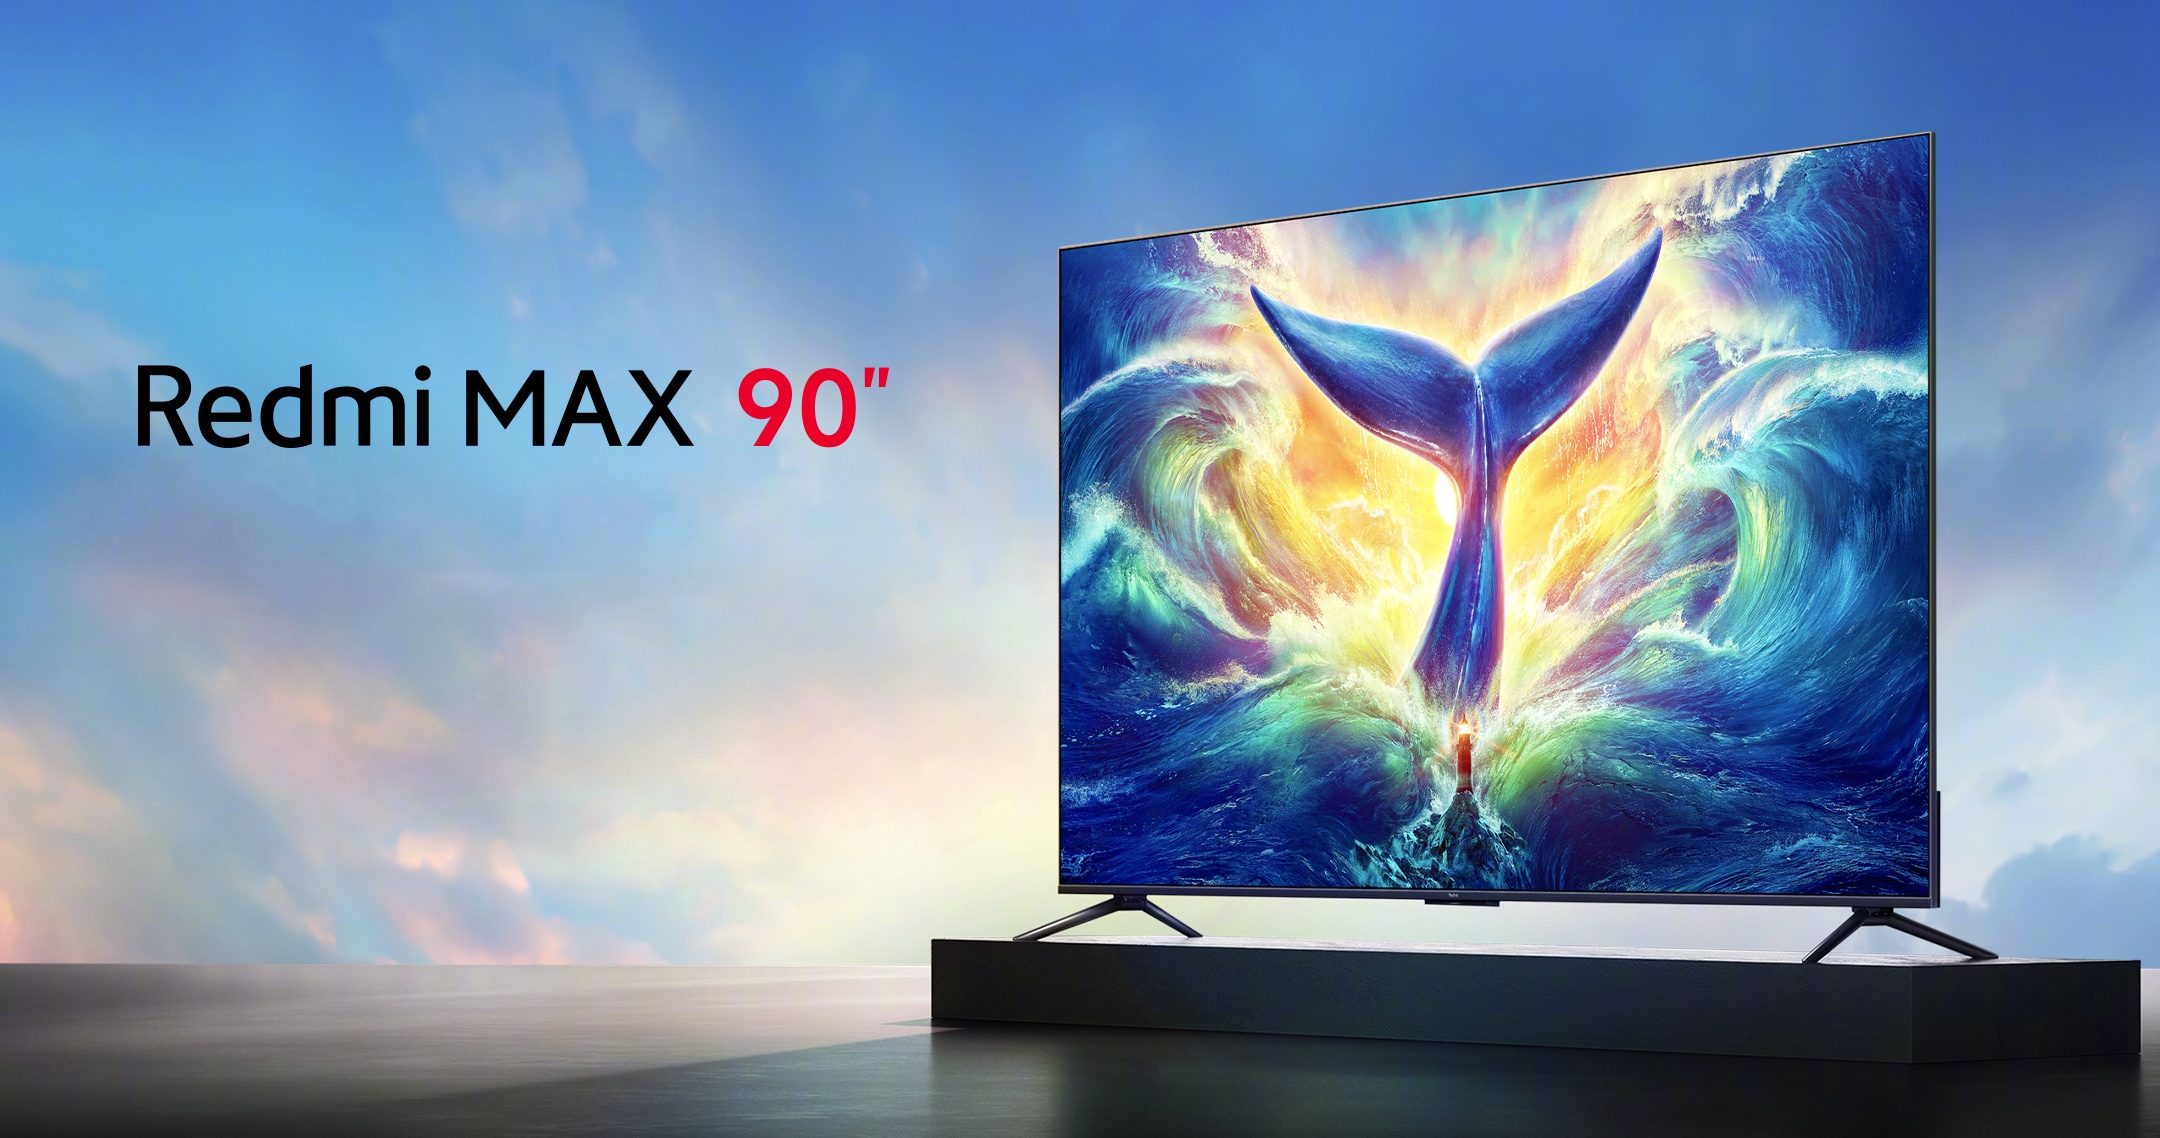 Xiaomi ha presentado una versión de 90 pulgadas de la smart TV Redmi MAX con pantalla de 144 Hz por 1150 dólares